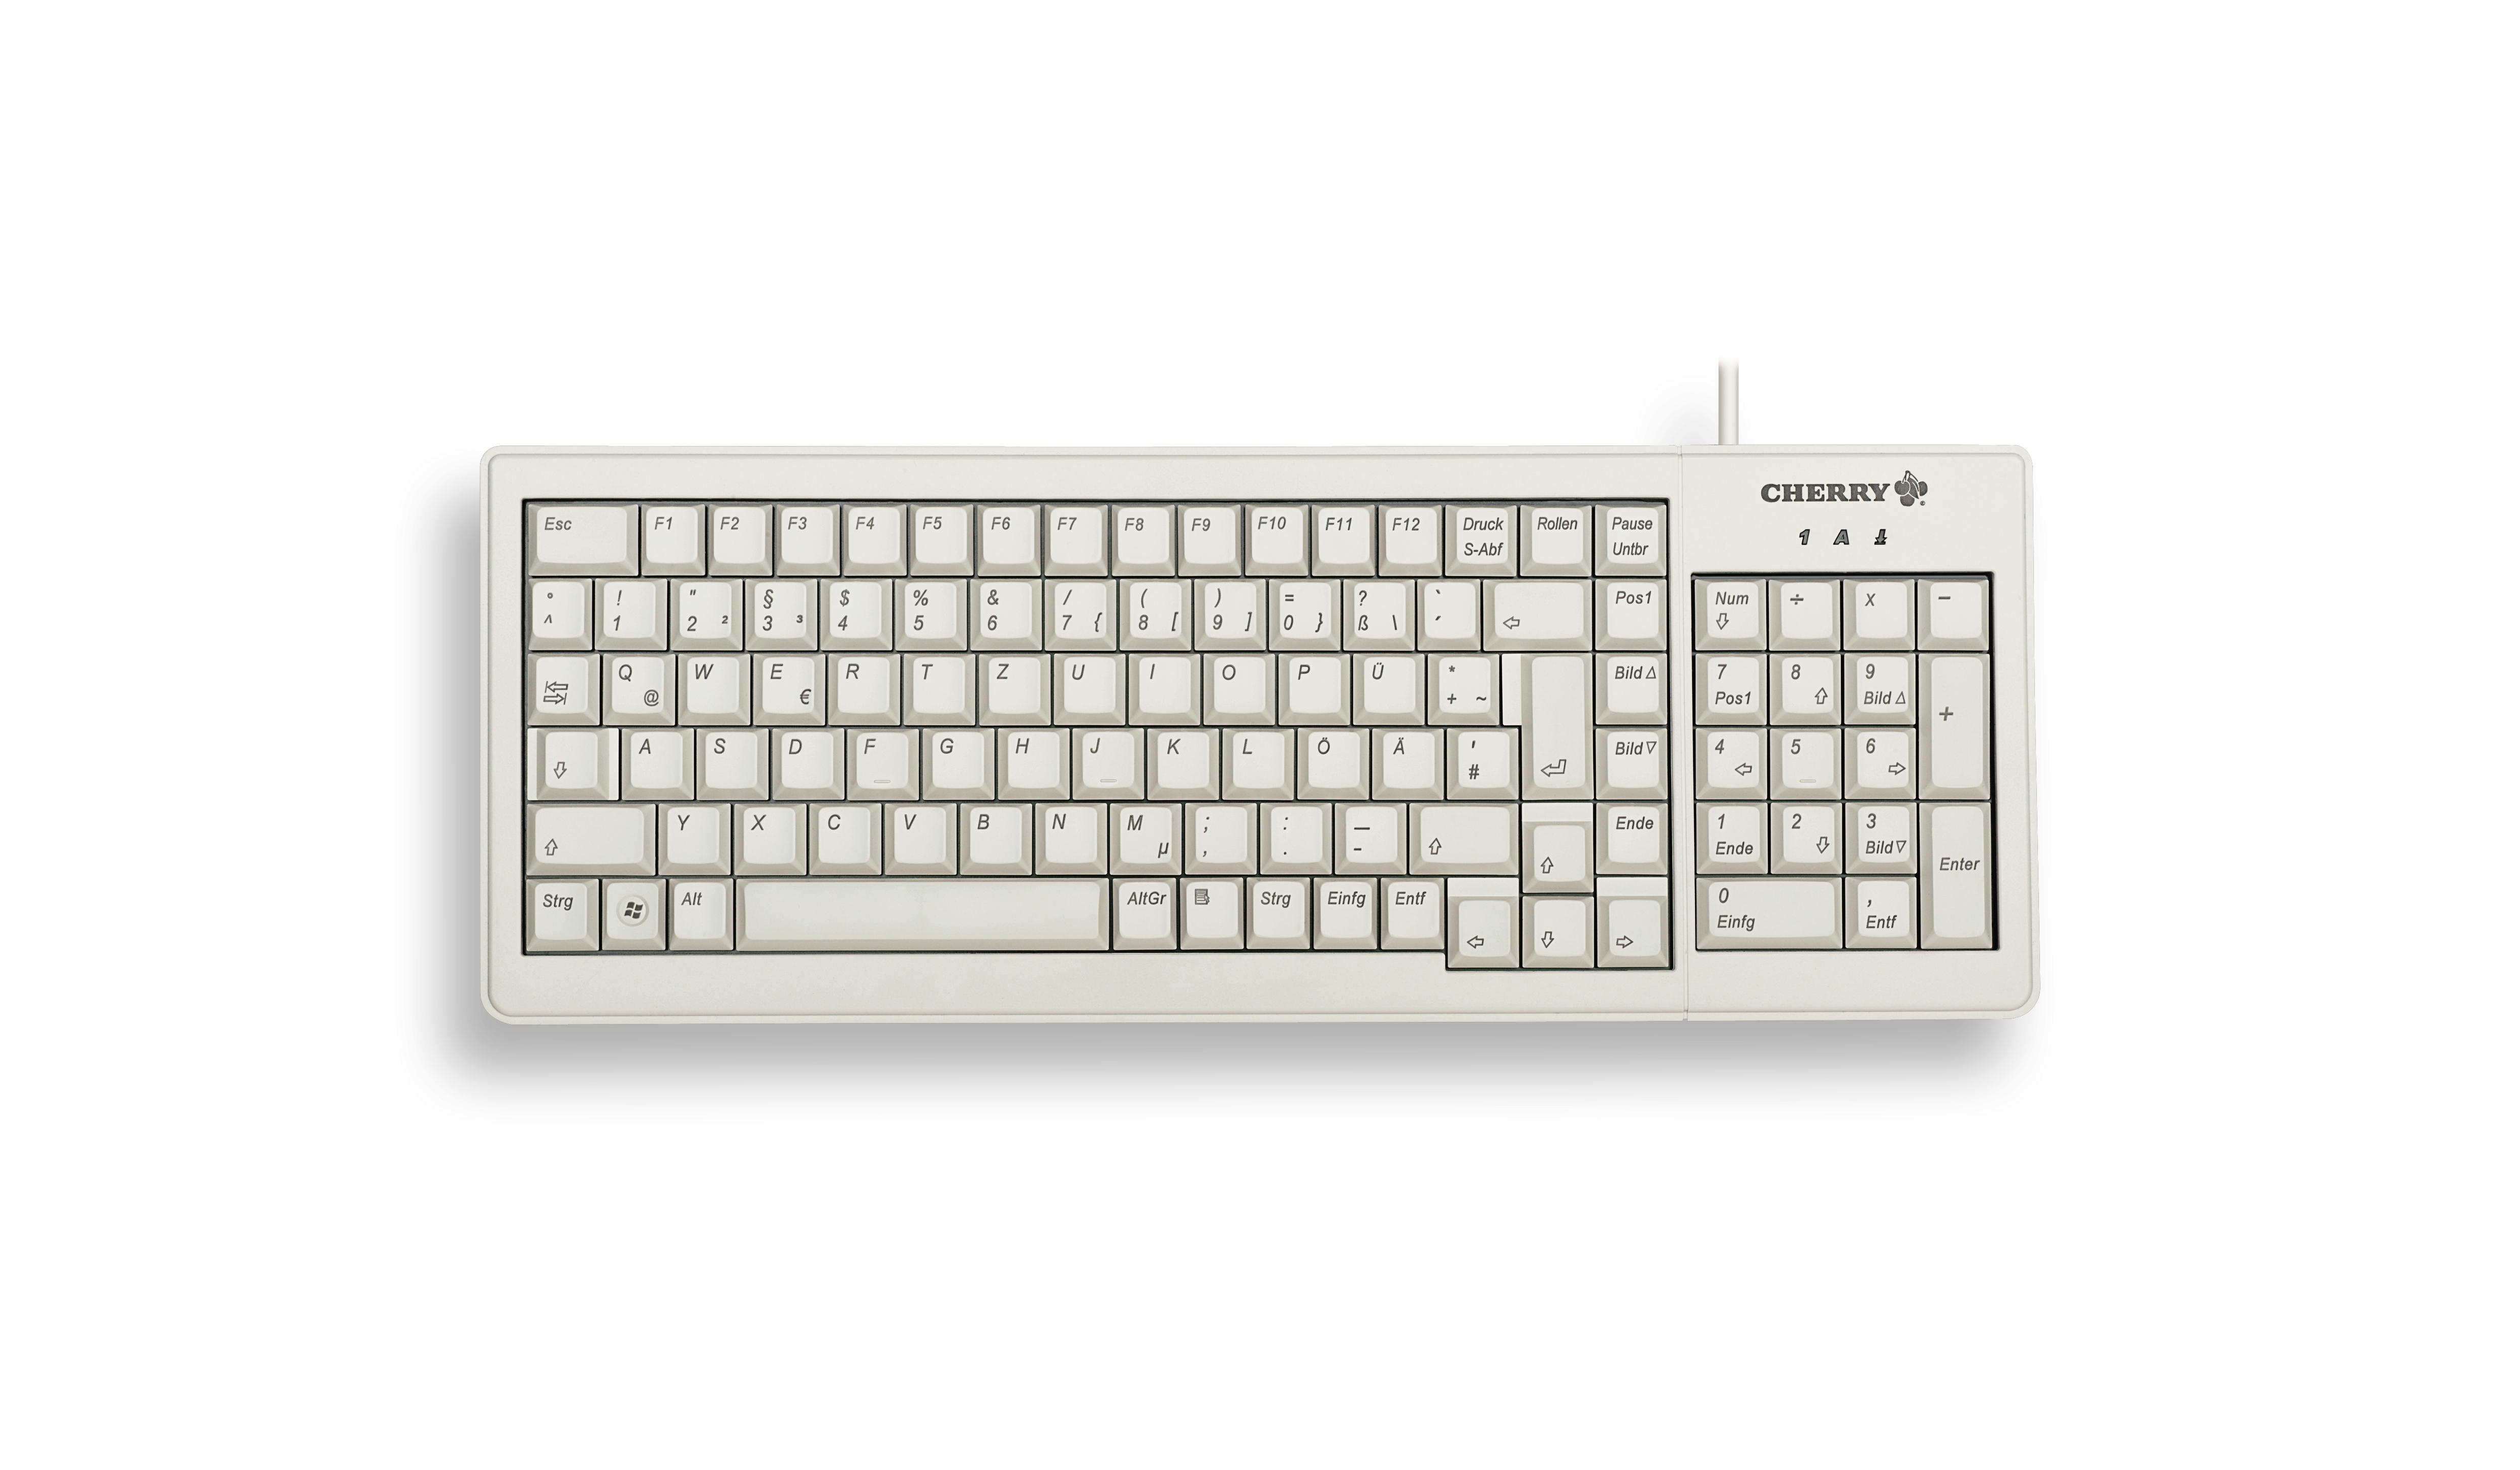 Cherry ML5200 - Tastatur - PS/2, USB - USA